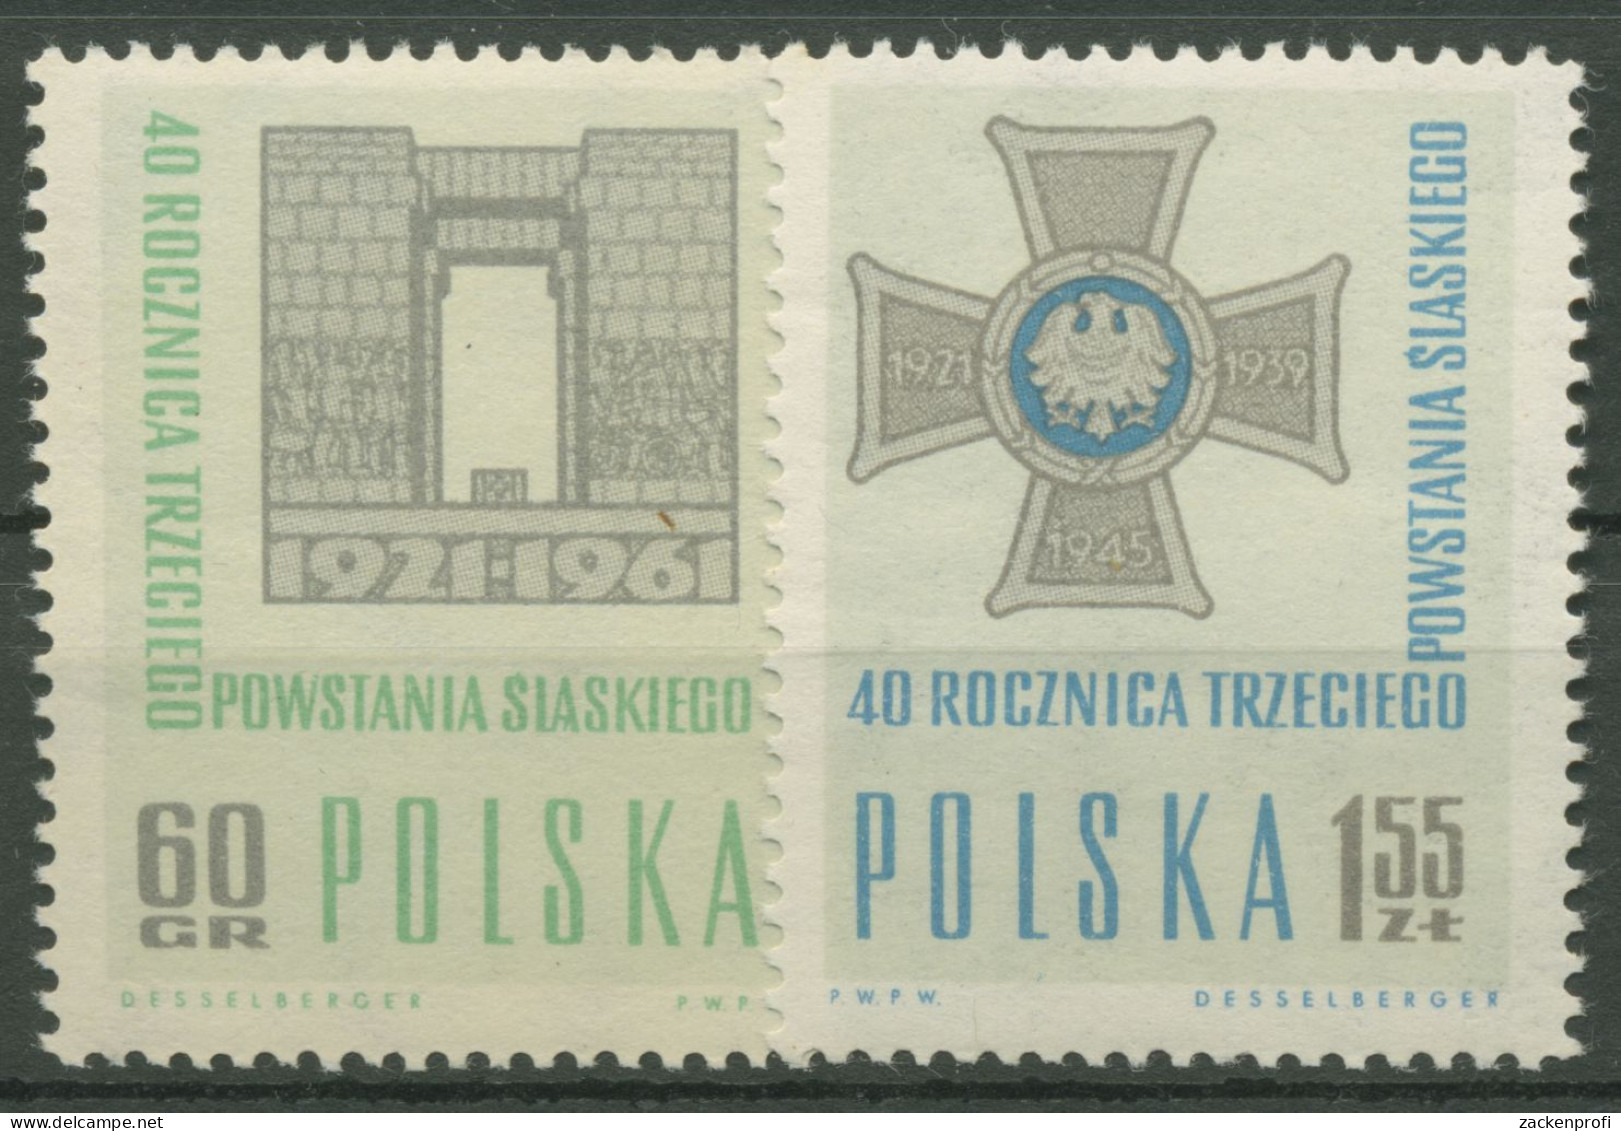 Polen 1961 Schlesischer Aufstand Denkmal 1259/60 Postfrisch - Neufs